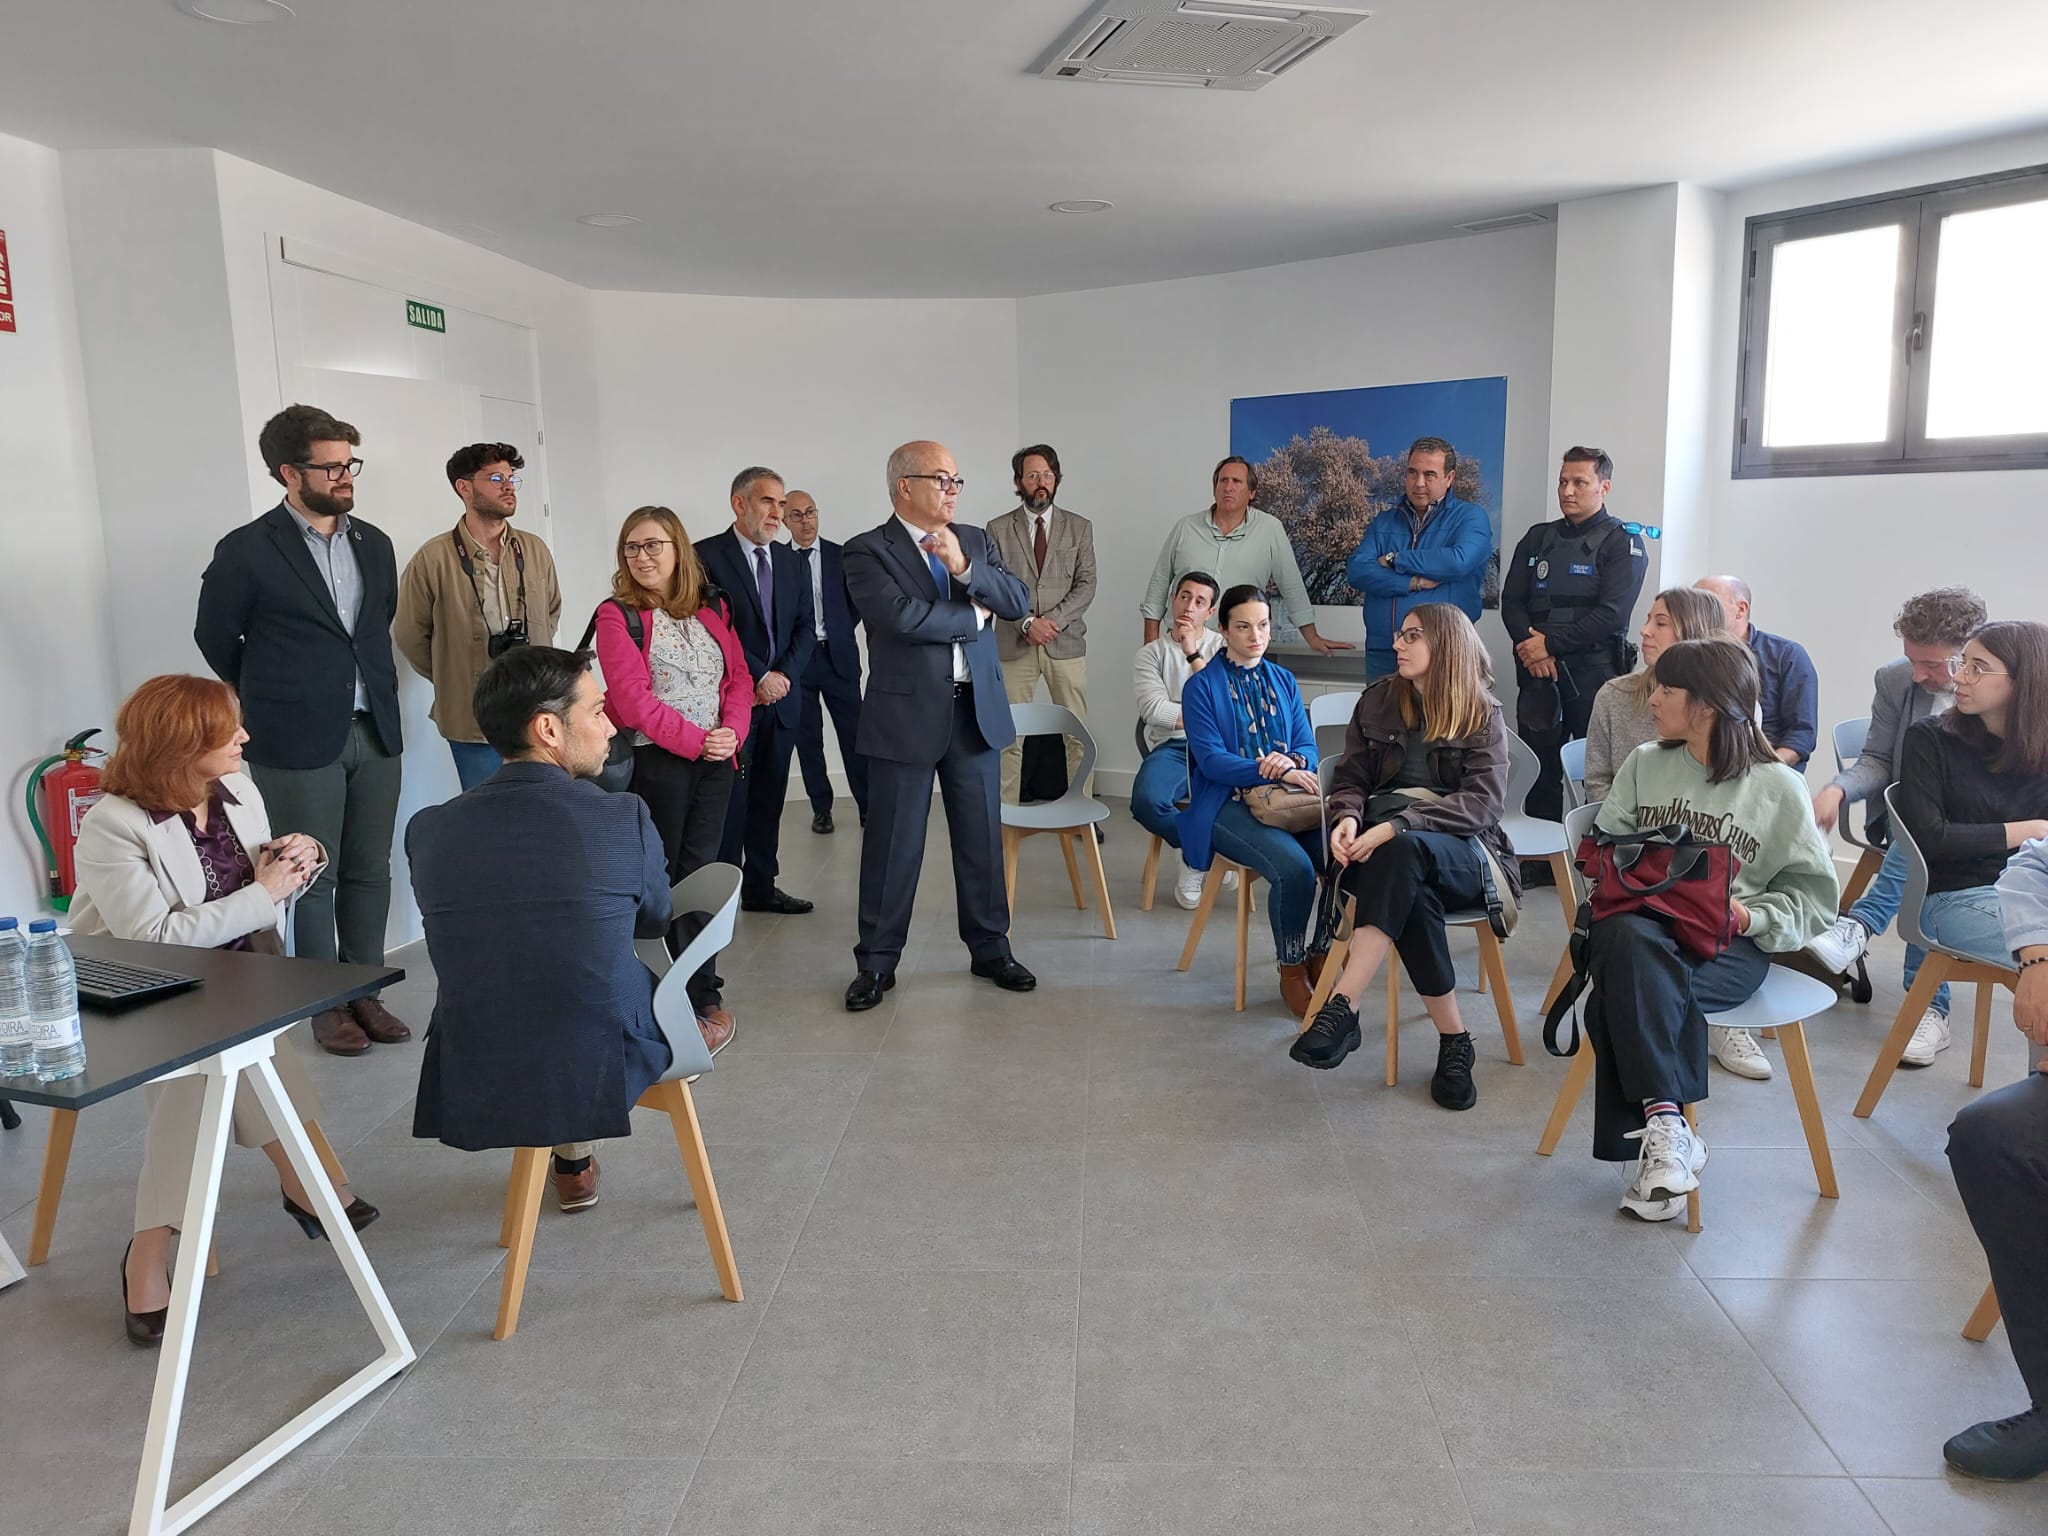 La DG para el Servicio Público de Justicia presenta la implantación del proyecto piloto de Oficina de Justicia en el municipio en Valverde de Leganés